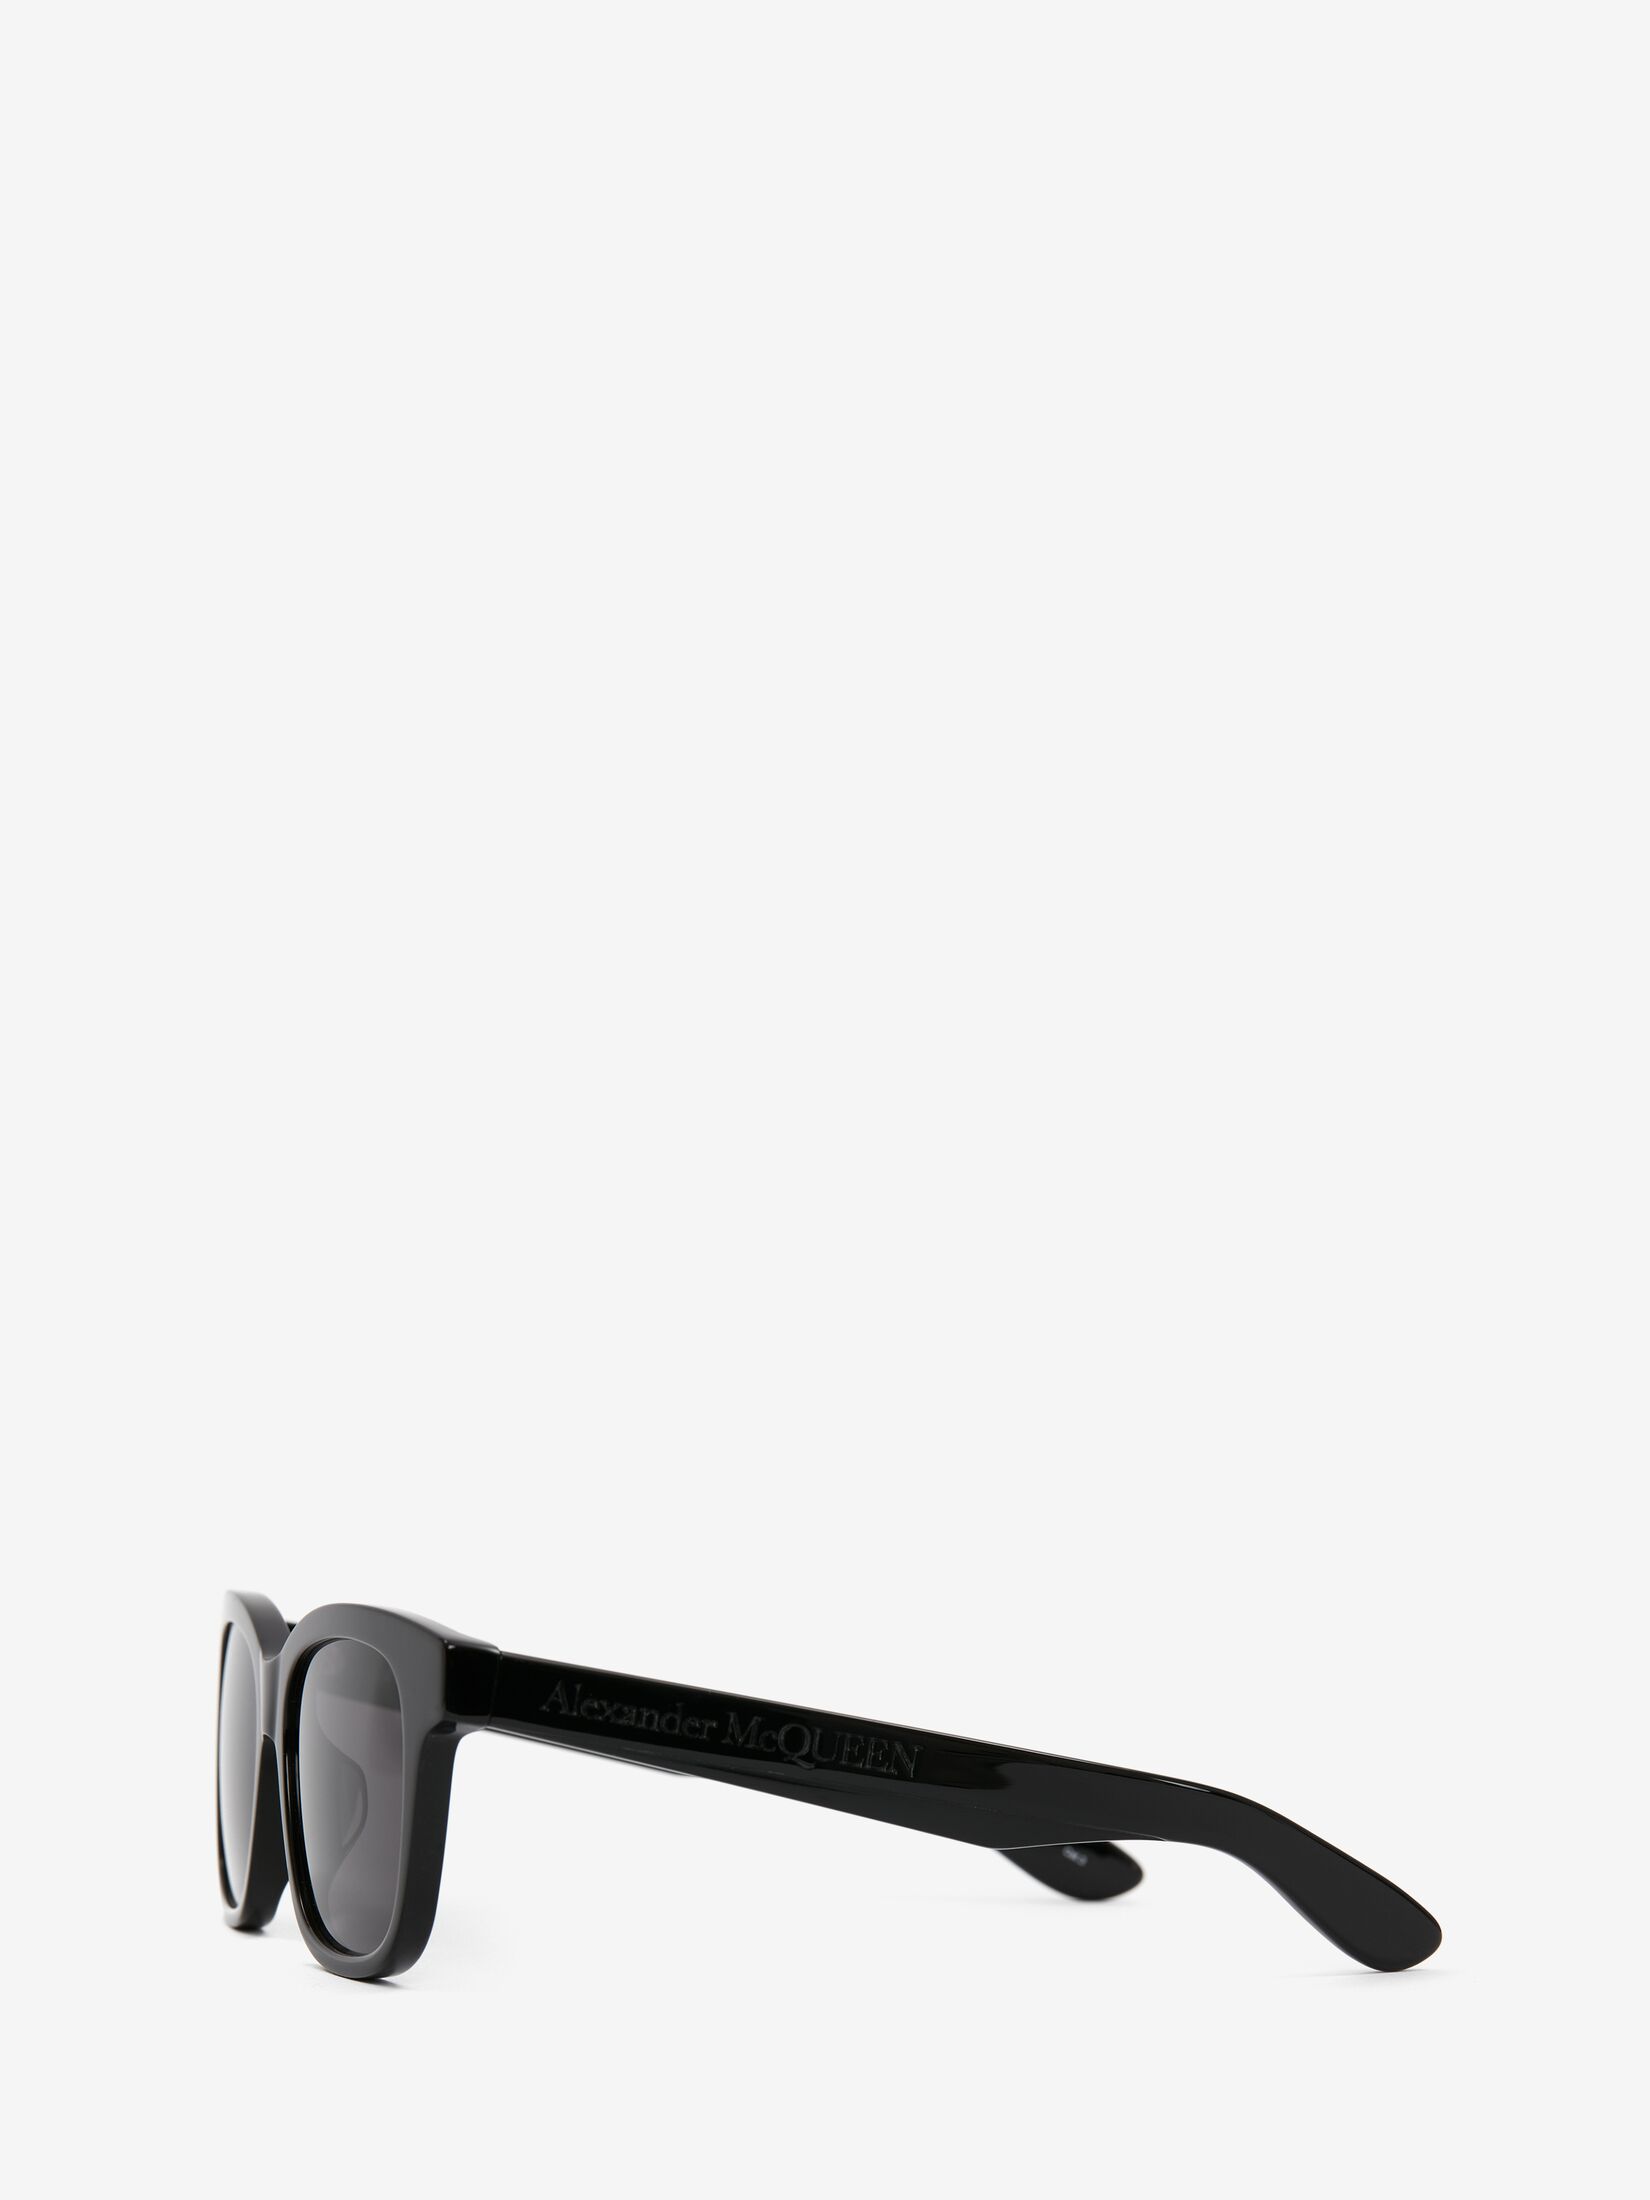 McQueen Angled Square Sunglasses